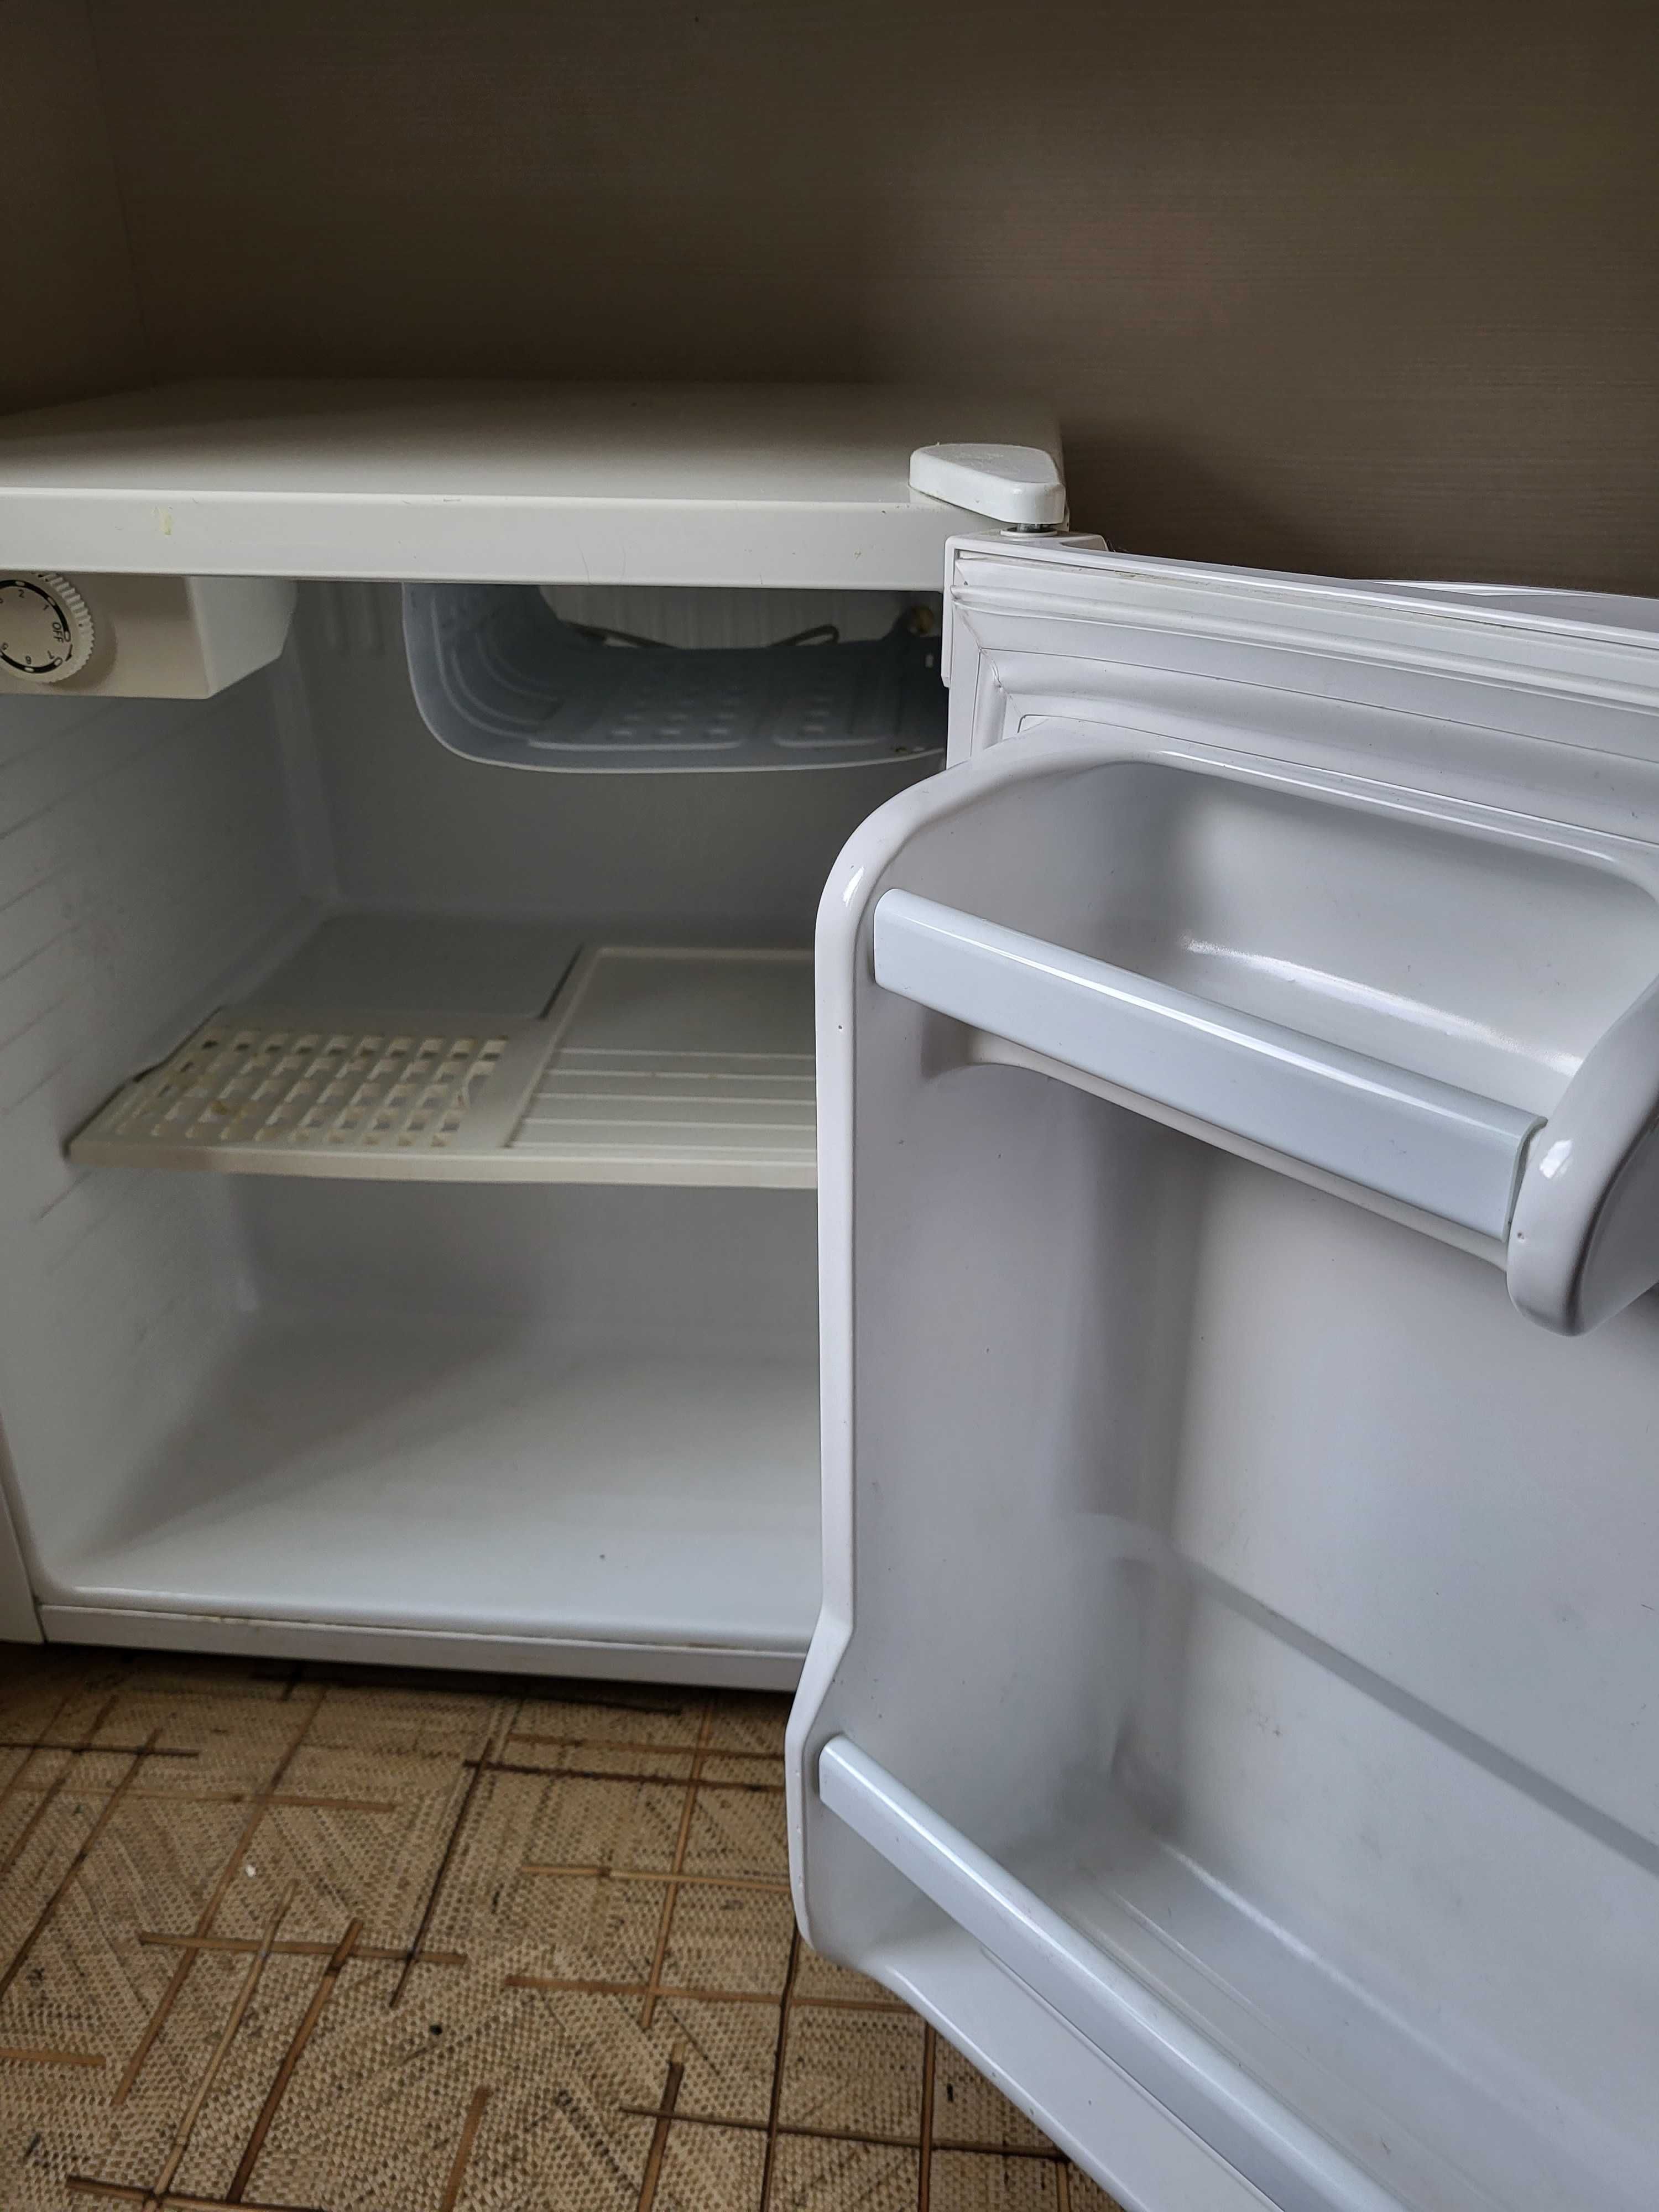 Продам холодильник Daewoo в хорошем состоянии